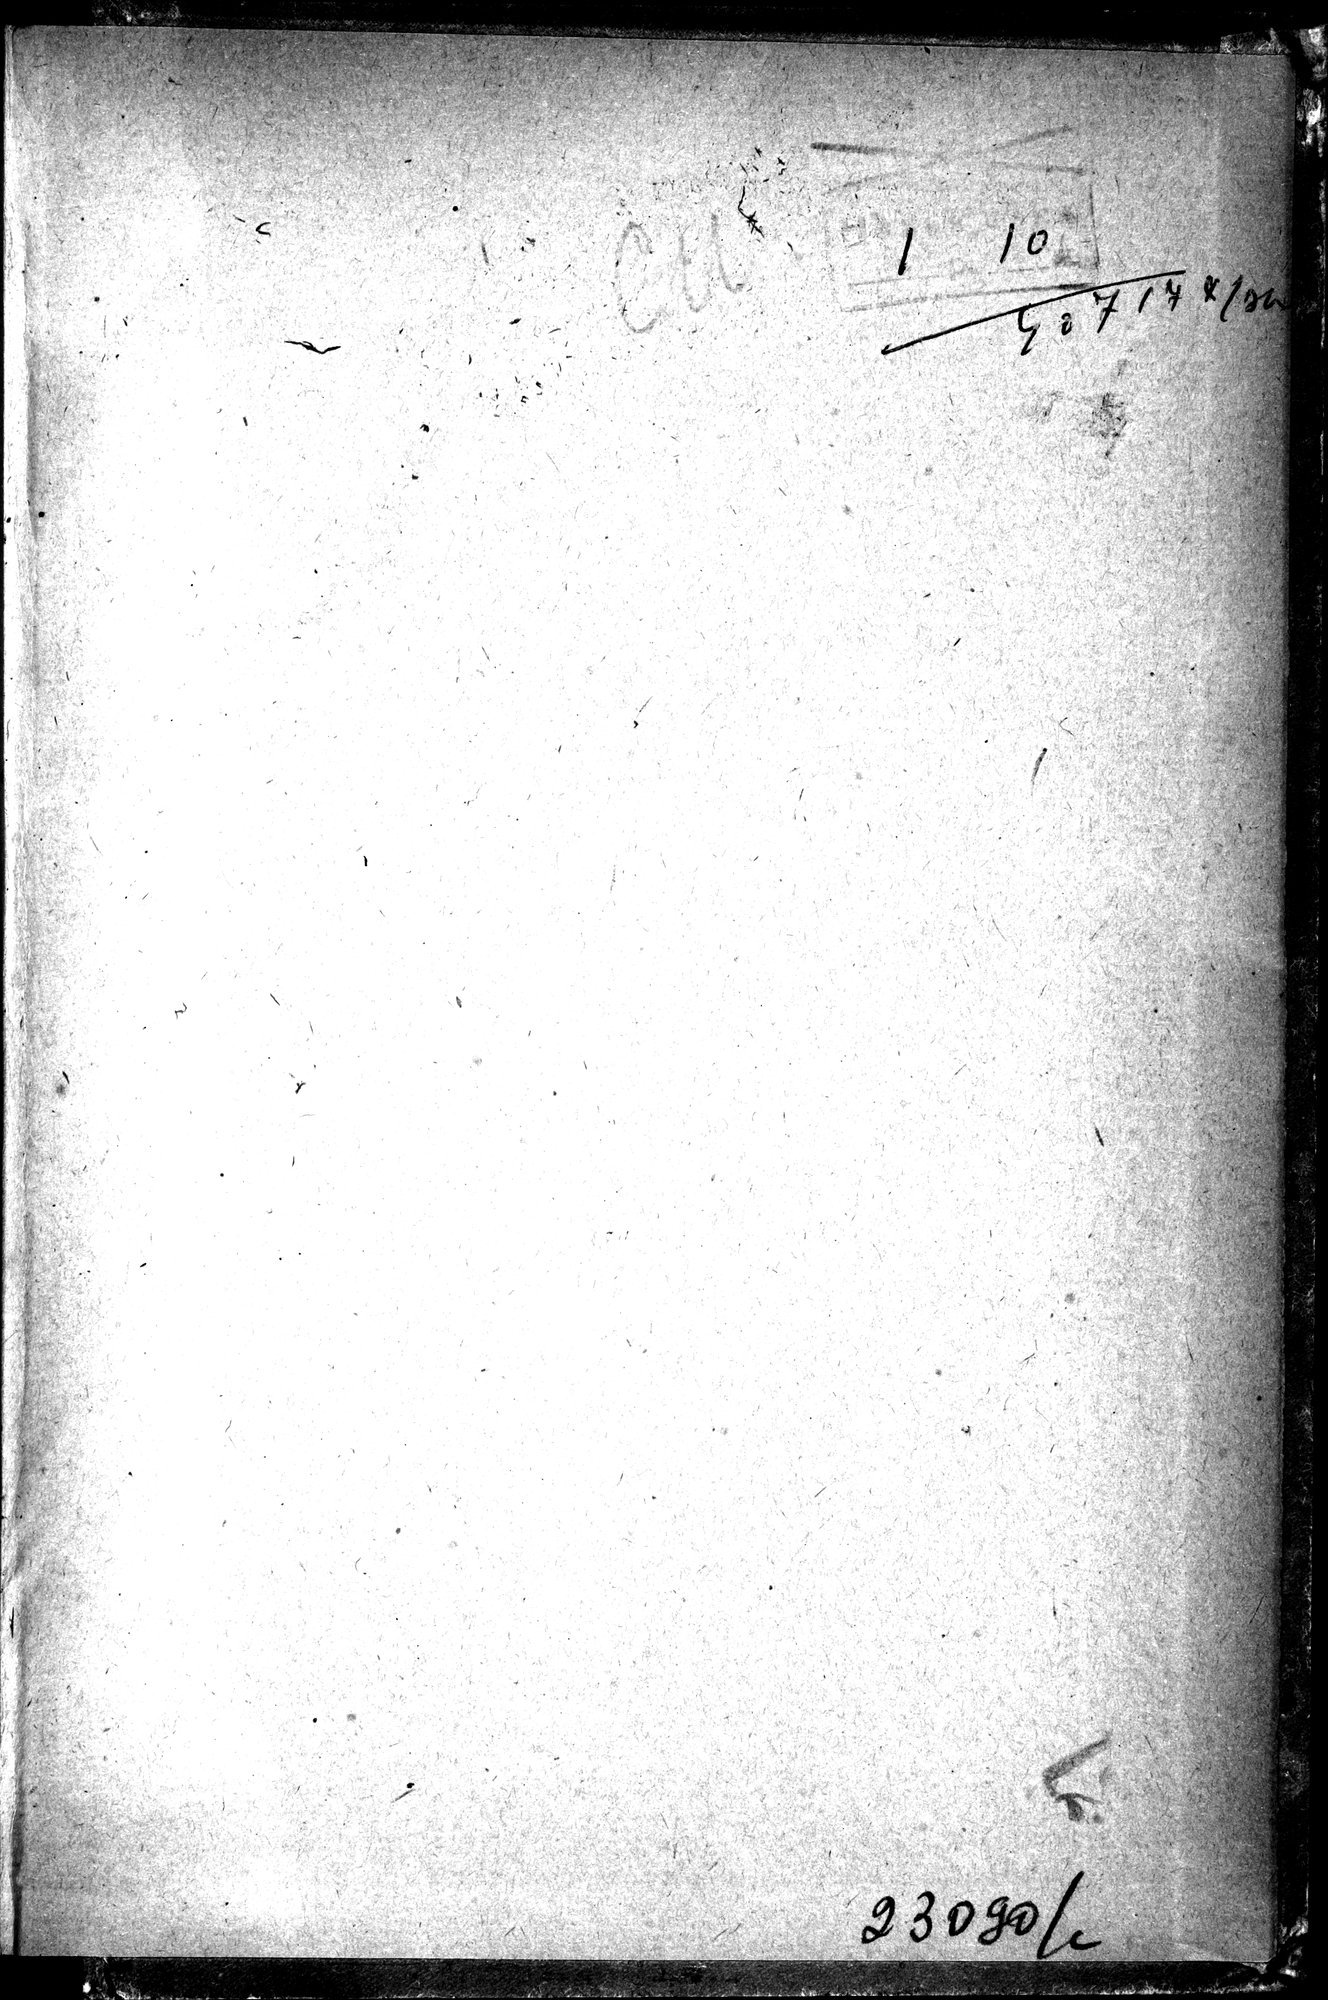 Puteshestvie v Tian' - Shan' v 1856-1857 godakh : vol.1 / 283 ページ（白黒高解像度画像）